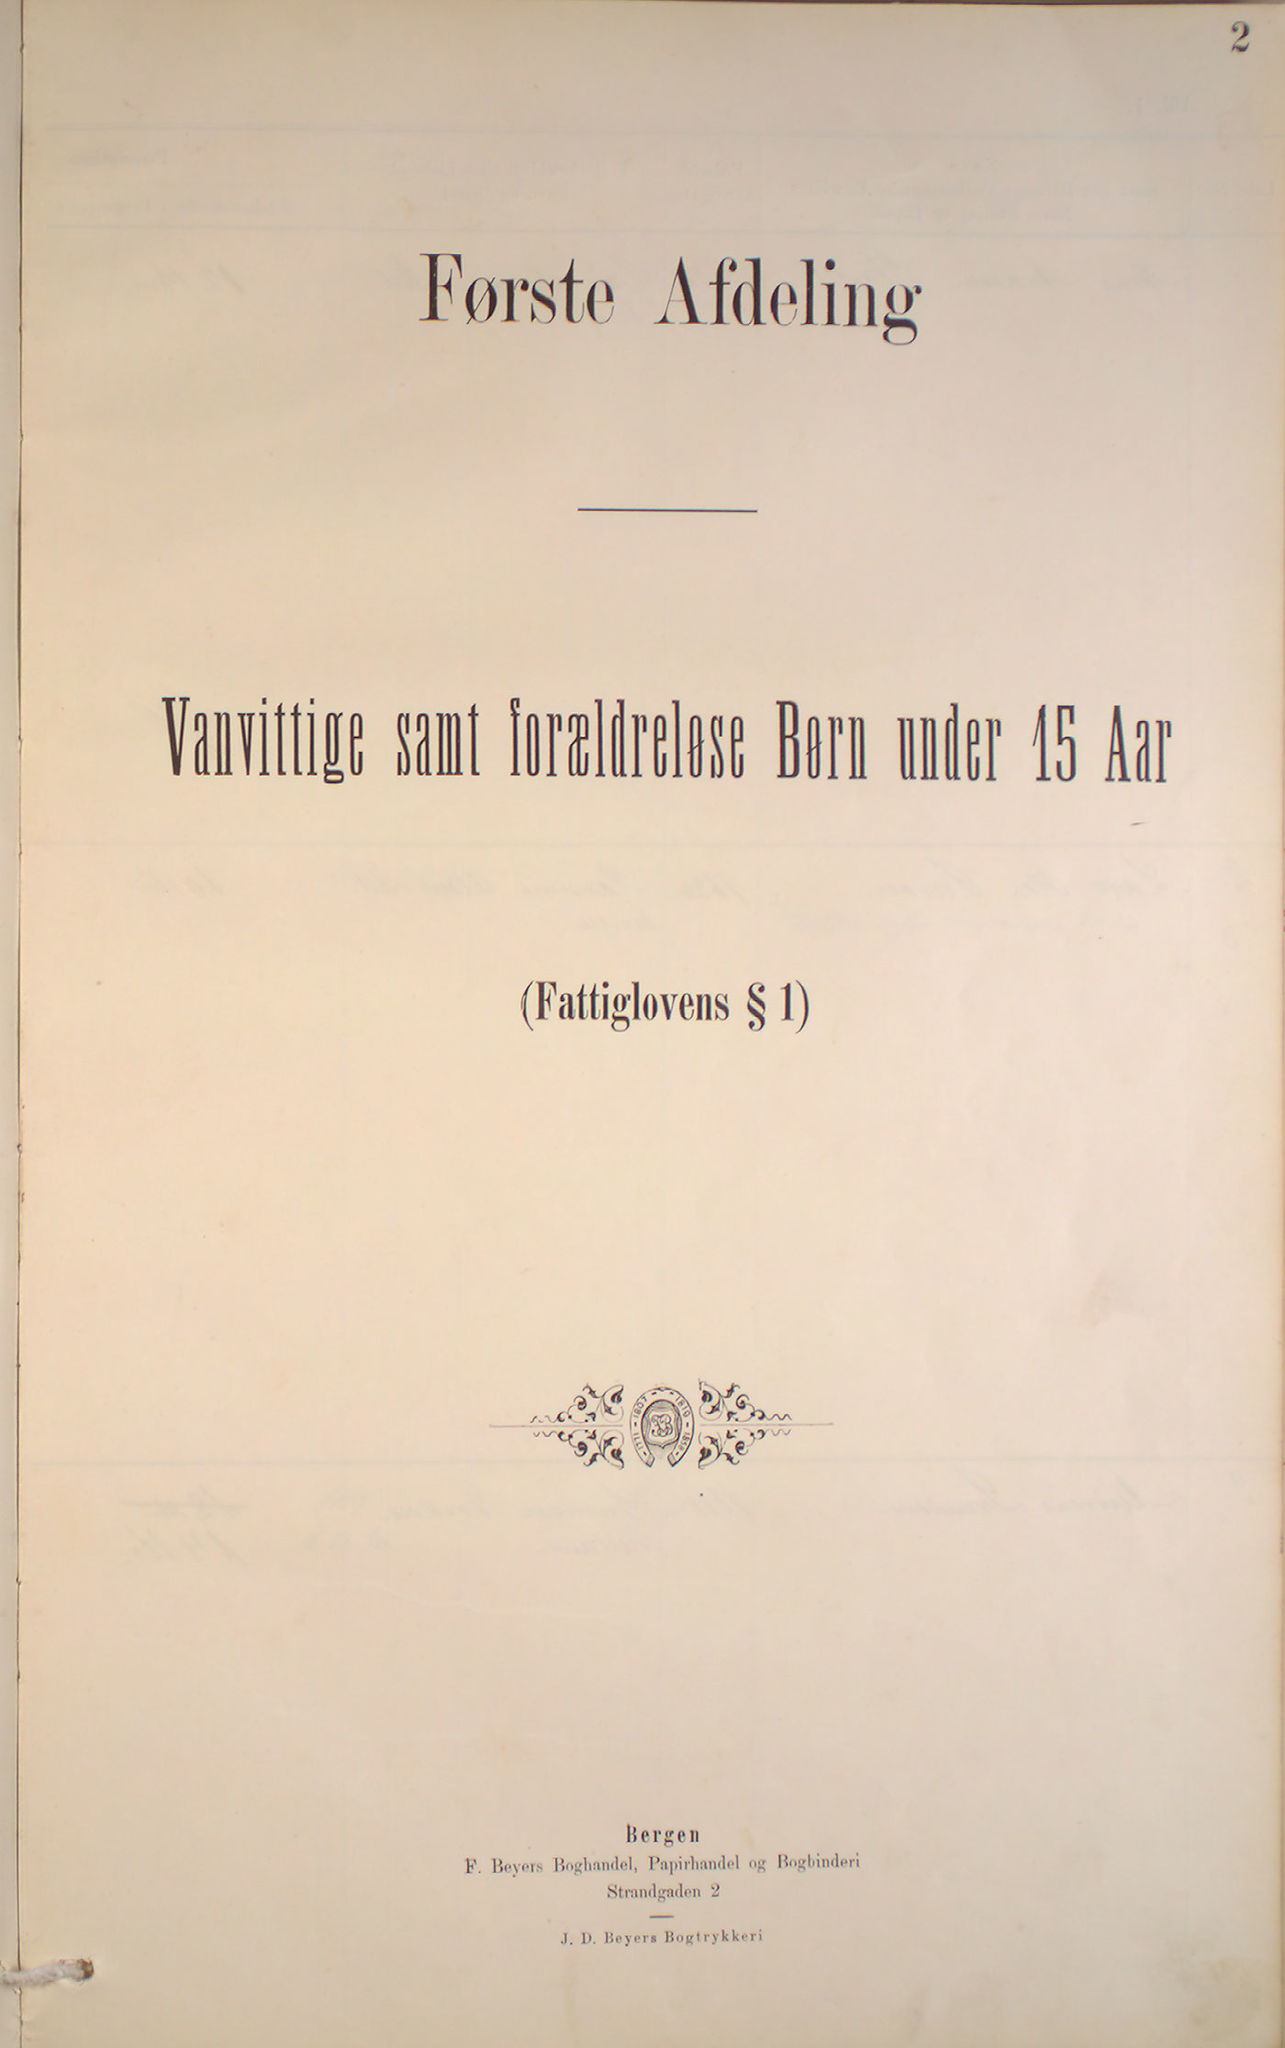 Bergen fattigvesen, BBA/-, 1886-1891, s. 2